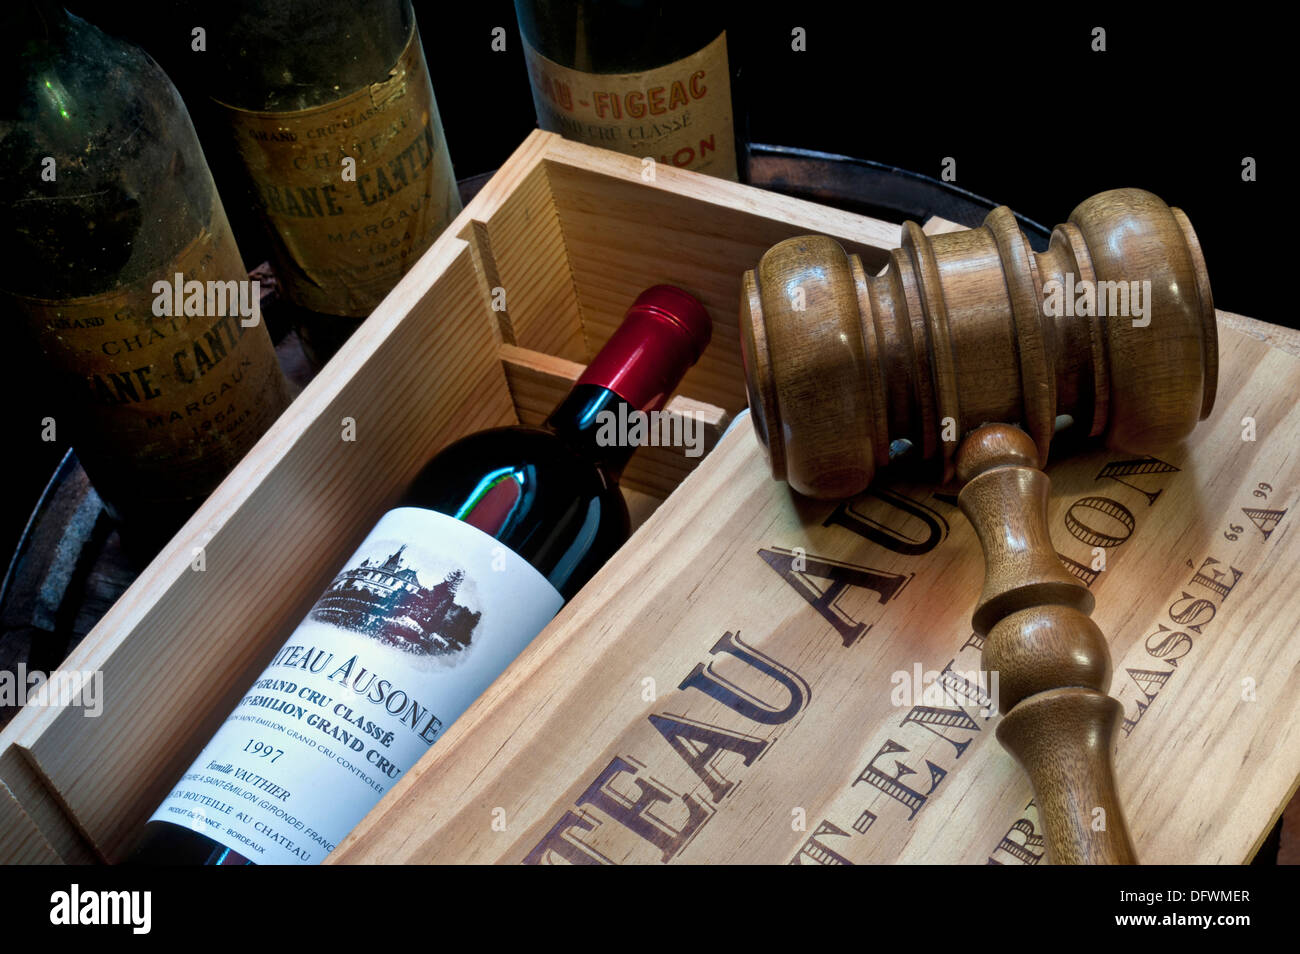 Versteigerung von erlesenen Weinen mit Gavel auf offener Kiste von Chateau Ausone Saint-Émilion und anderen älteren edlen Bordeaux-Weinflaschen hinter Frankreich Stockfoto